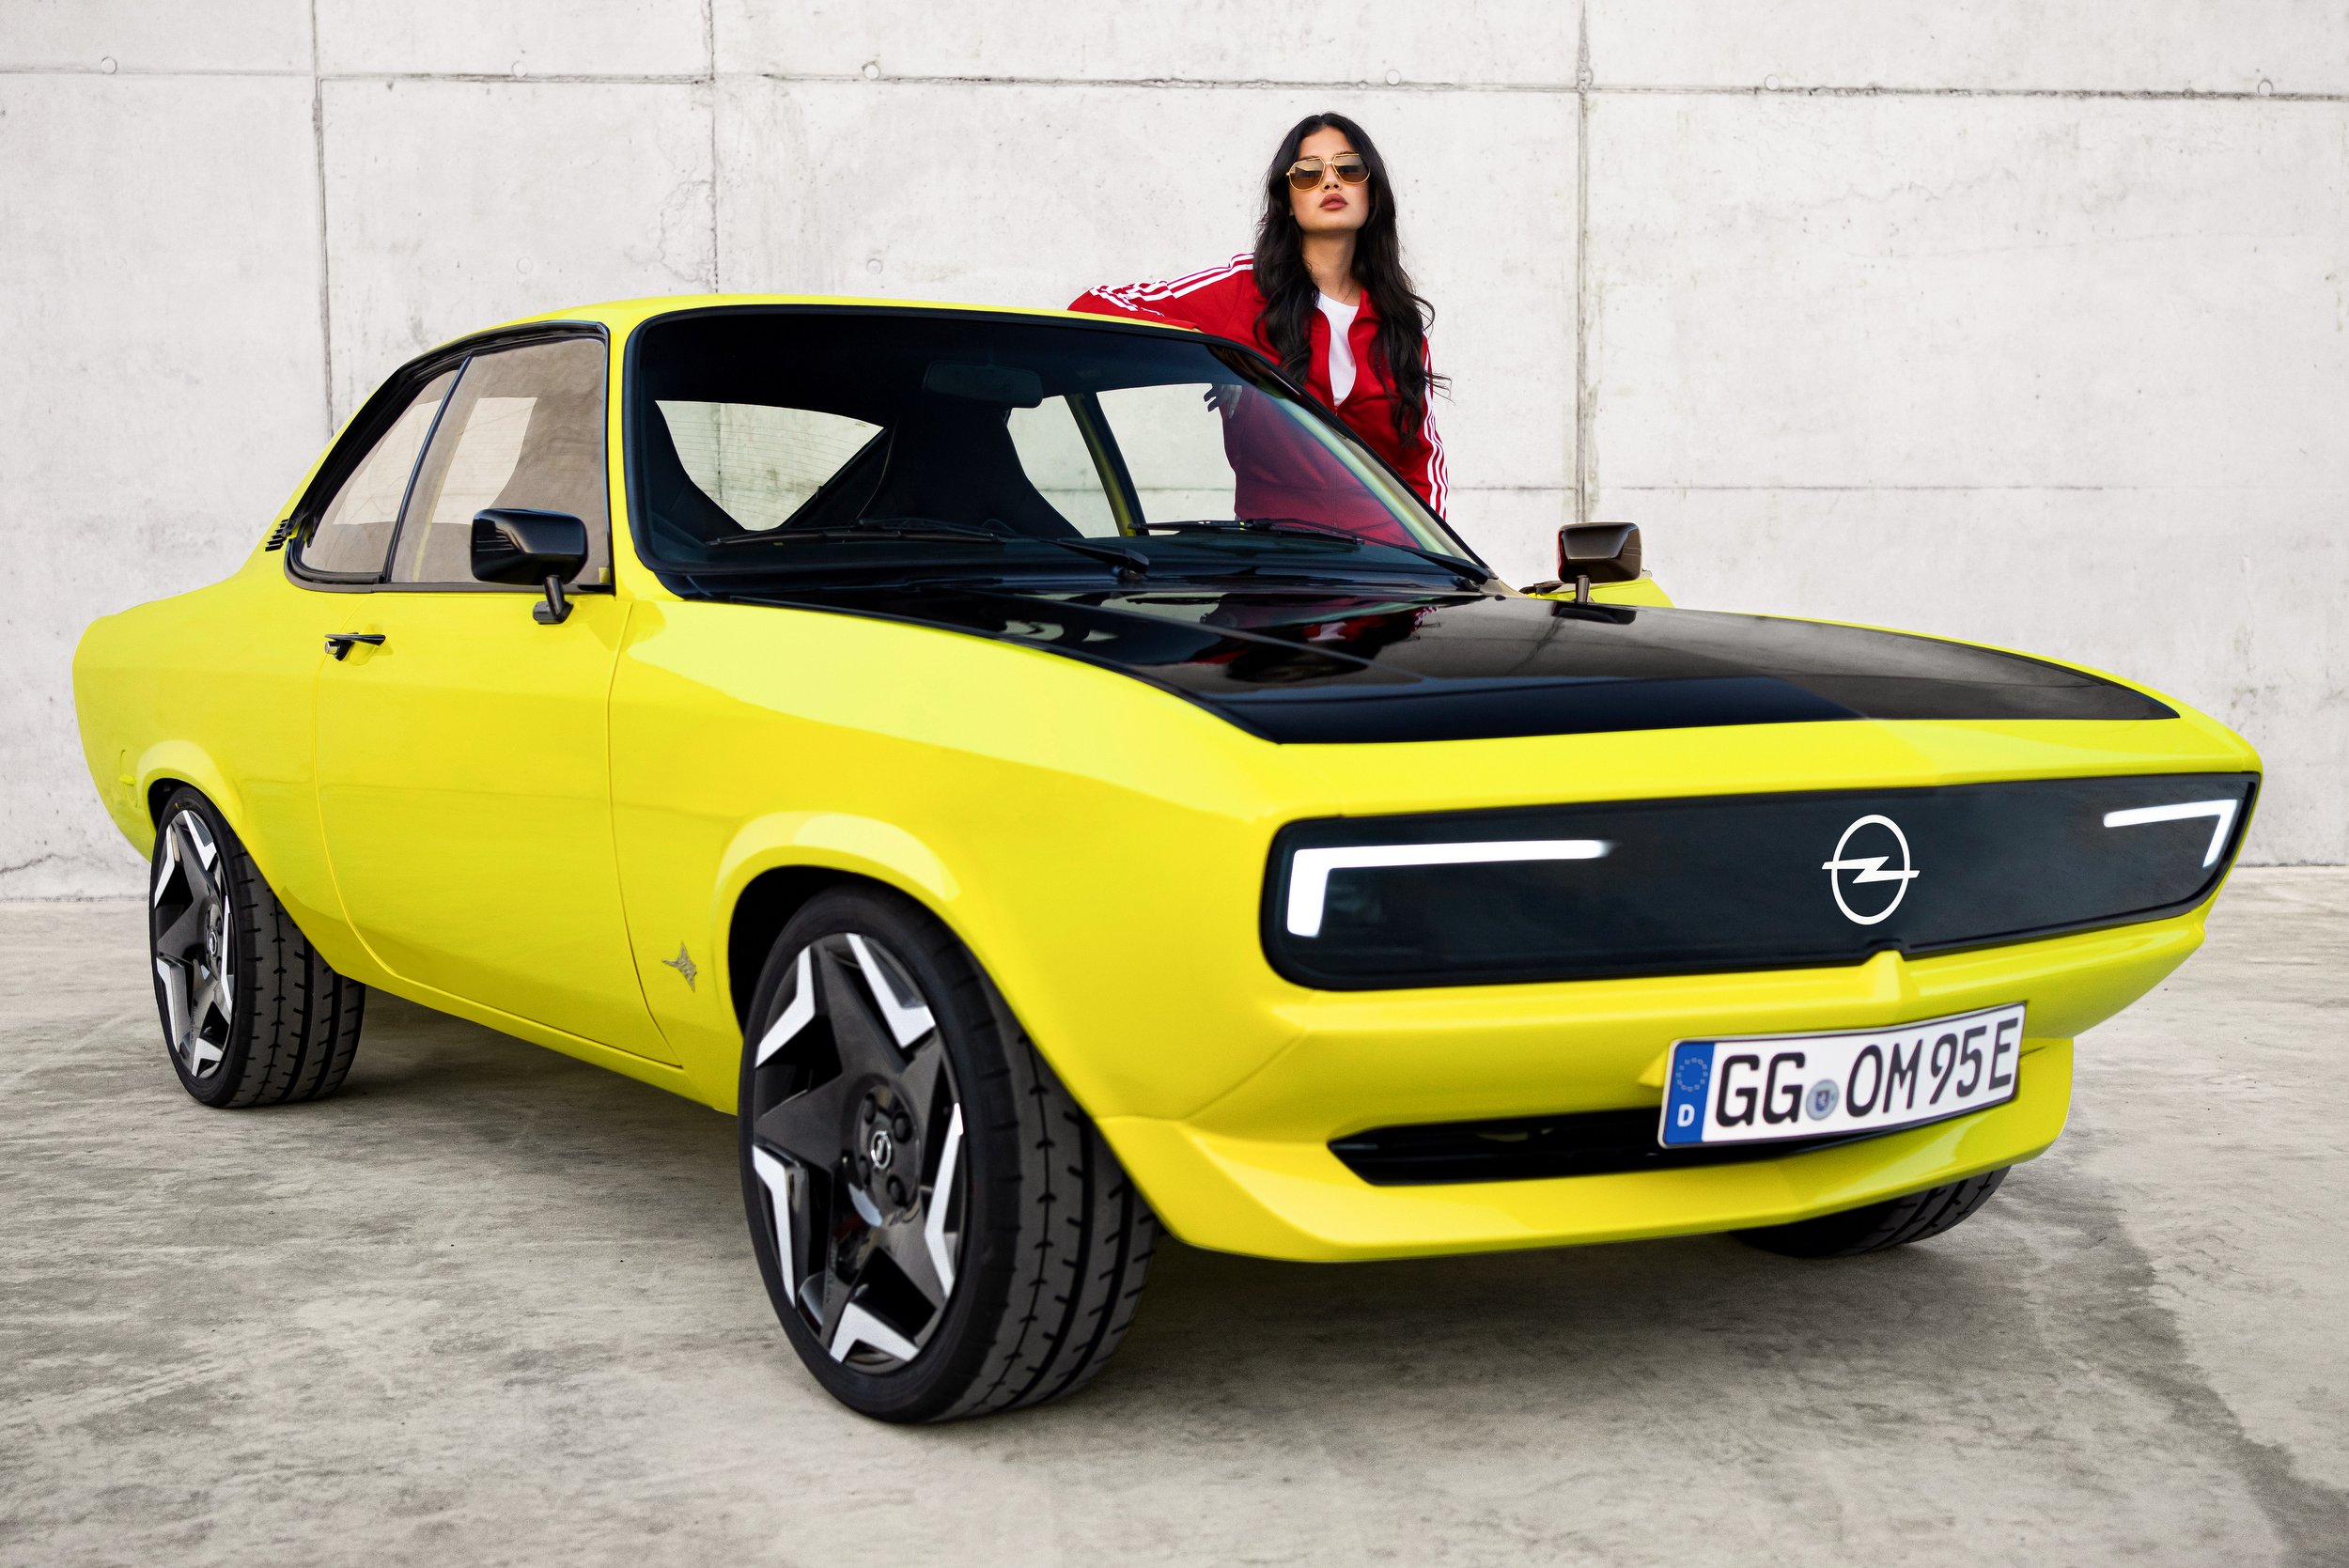 Gyári átalakítás: villanymotort szereltek az Opel Mantába 17